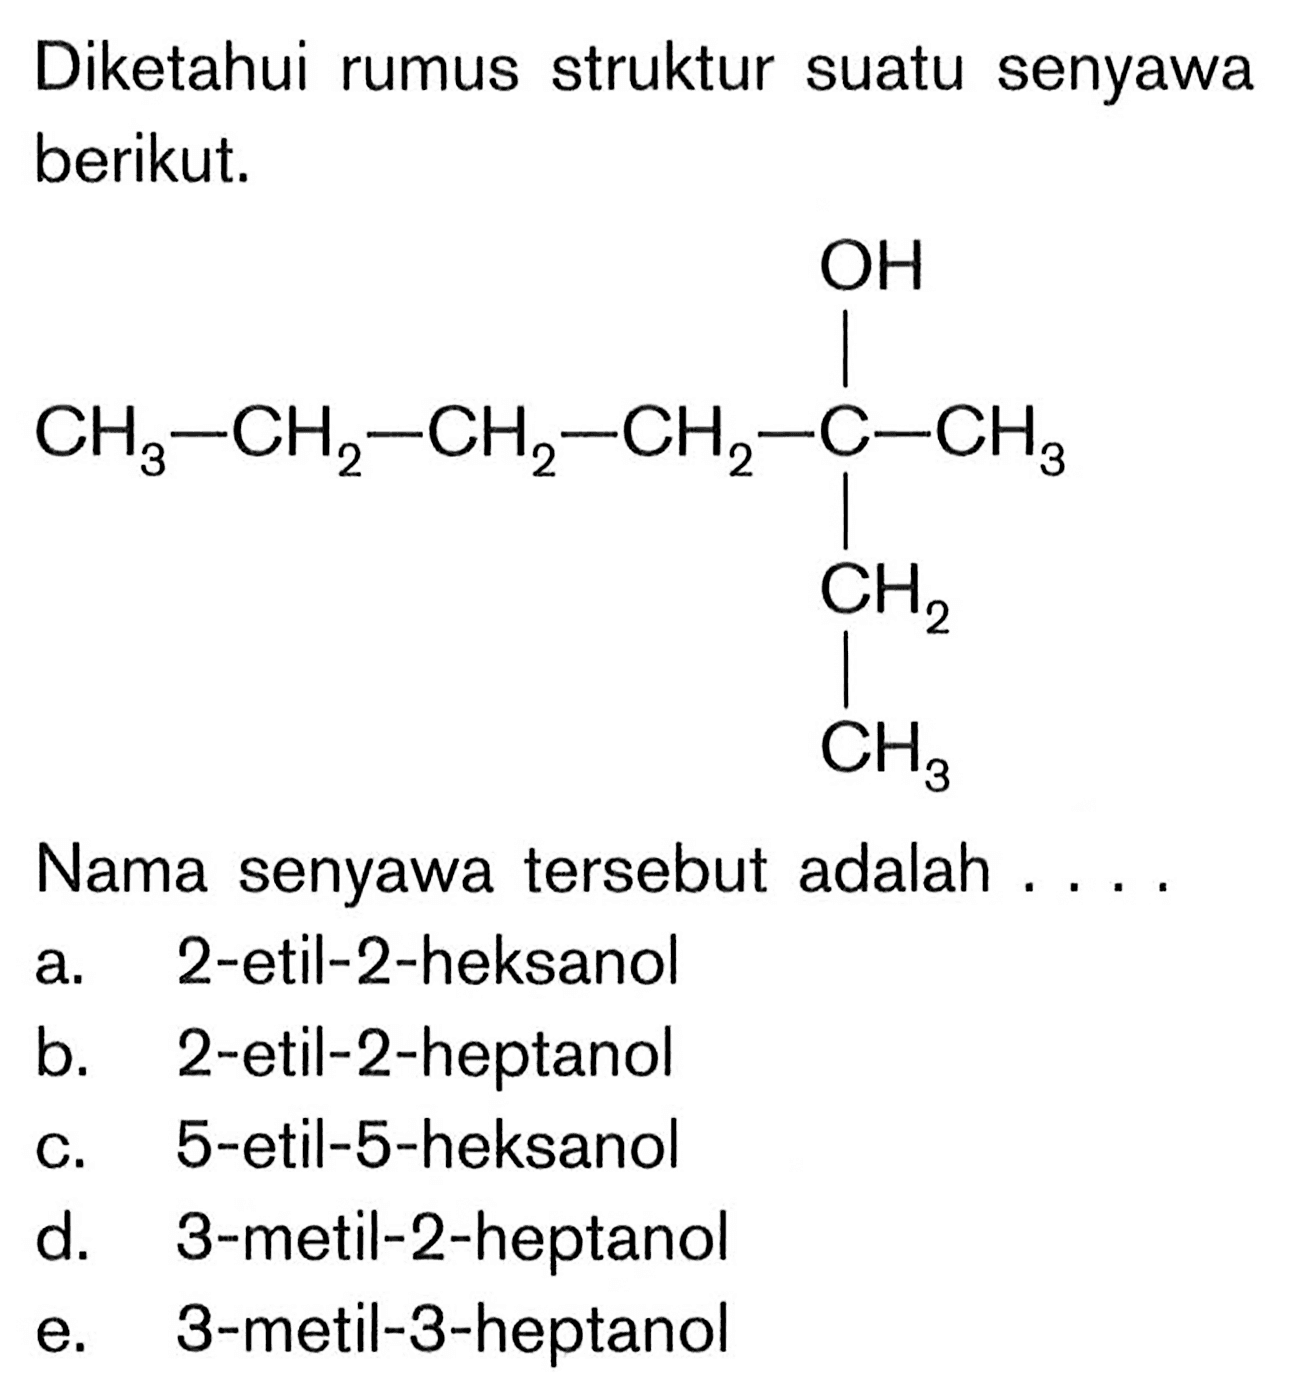 Diketahui rumus struktur suatu senyawa berikut.CH3 - CH2 - CH2 - CH2 - C - CH3 OH CH2 CH3Nama senyawa tersebut adalah ....